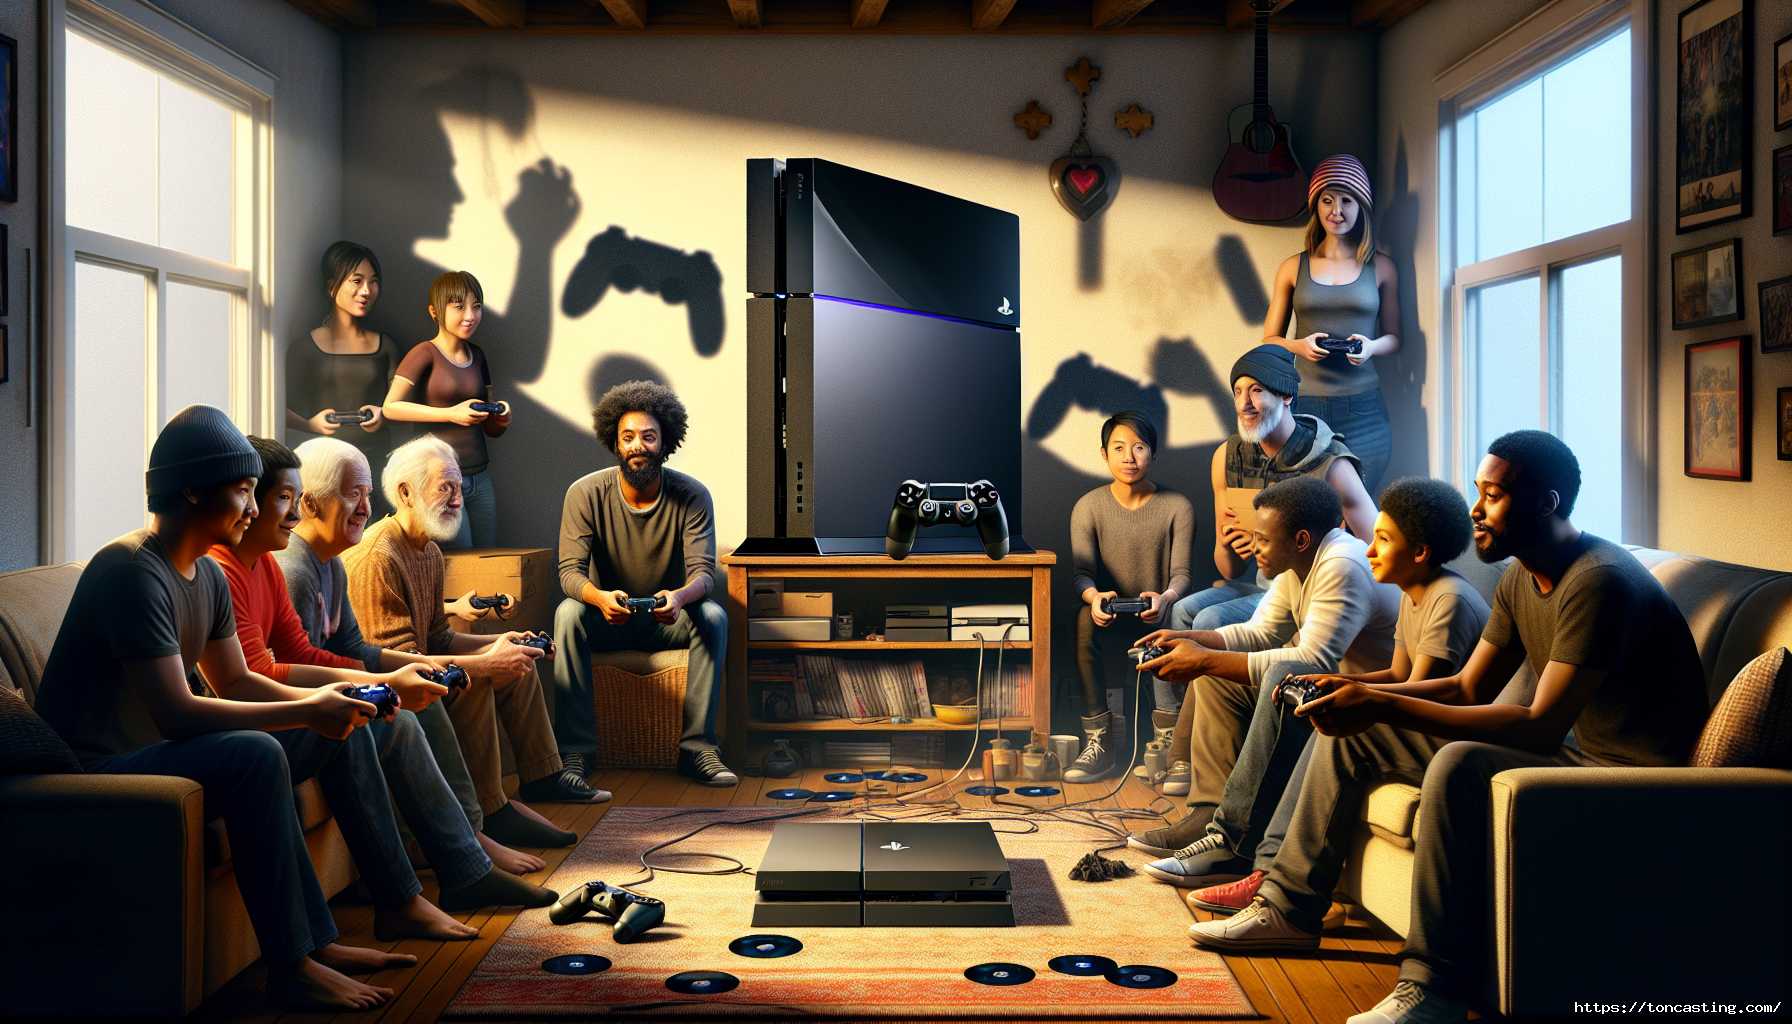 Groupe de personnes de différents âges jouant à des jeux vidéo dans un salon.